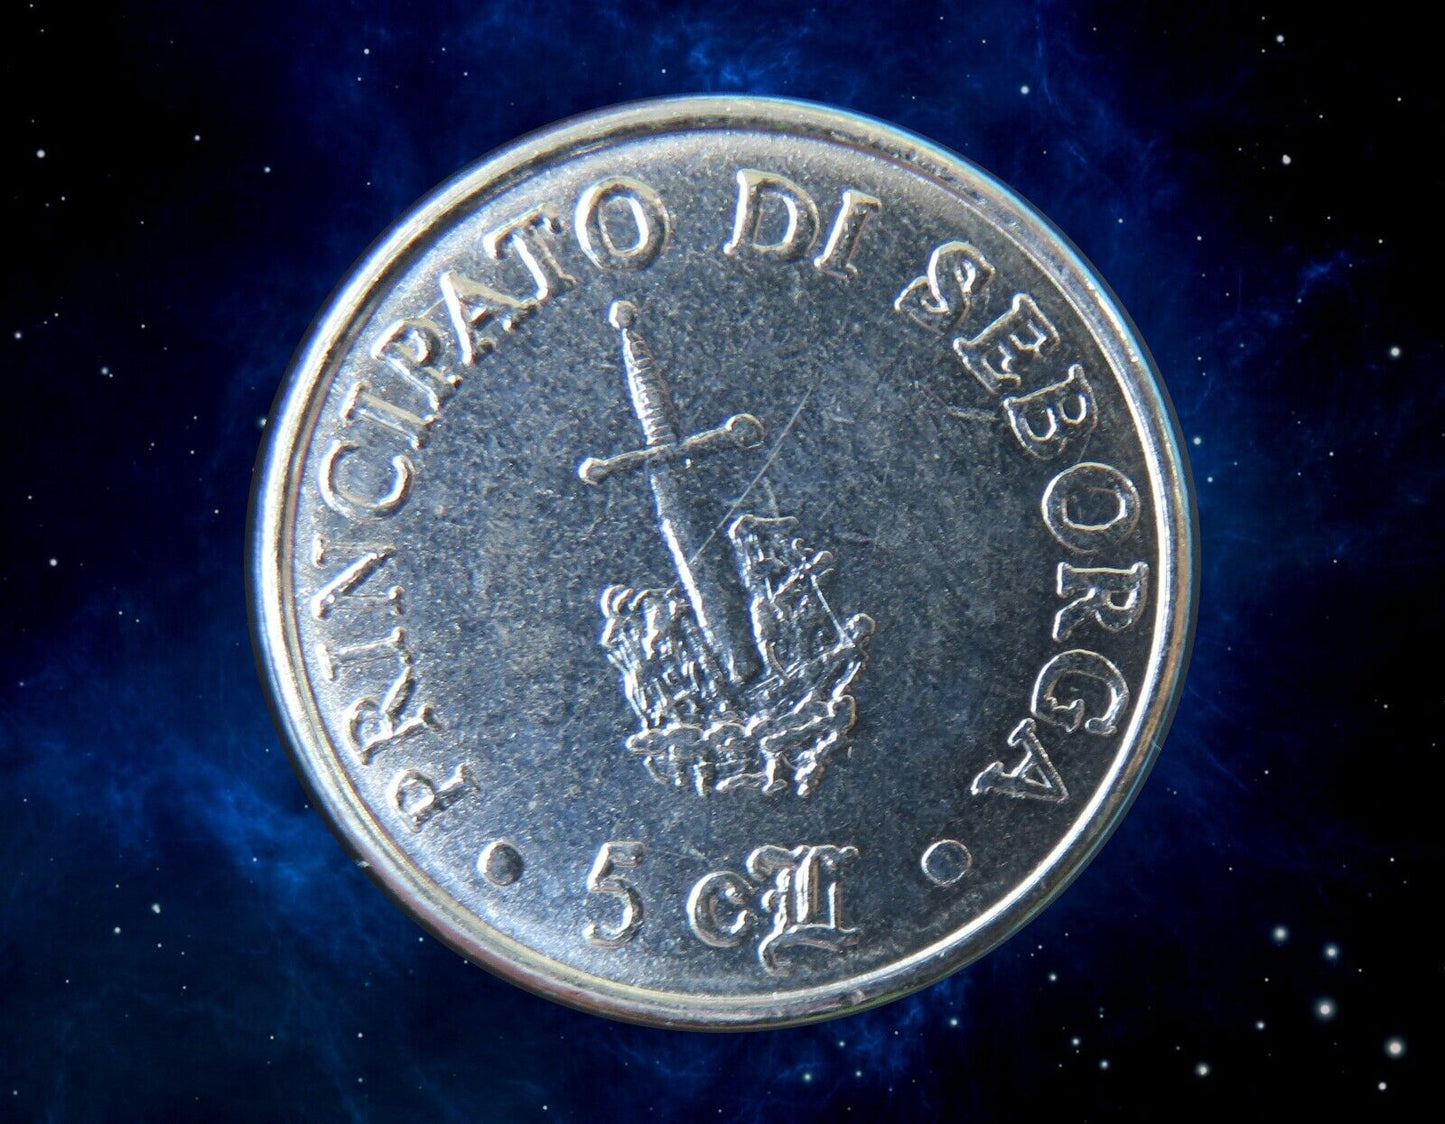 ITALIE - ITALIA - SEBORGA - 5 Centesimi di Luigino 1995